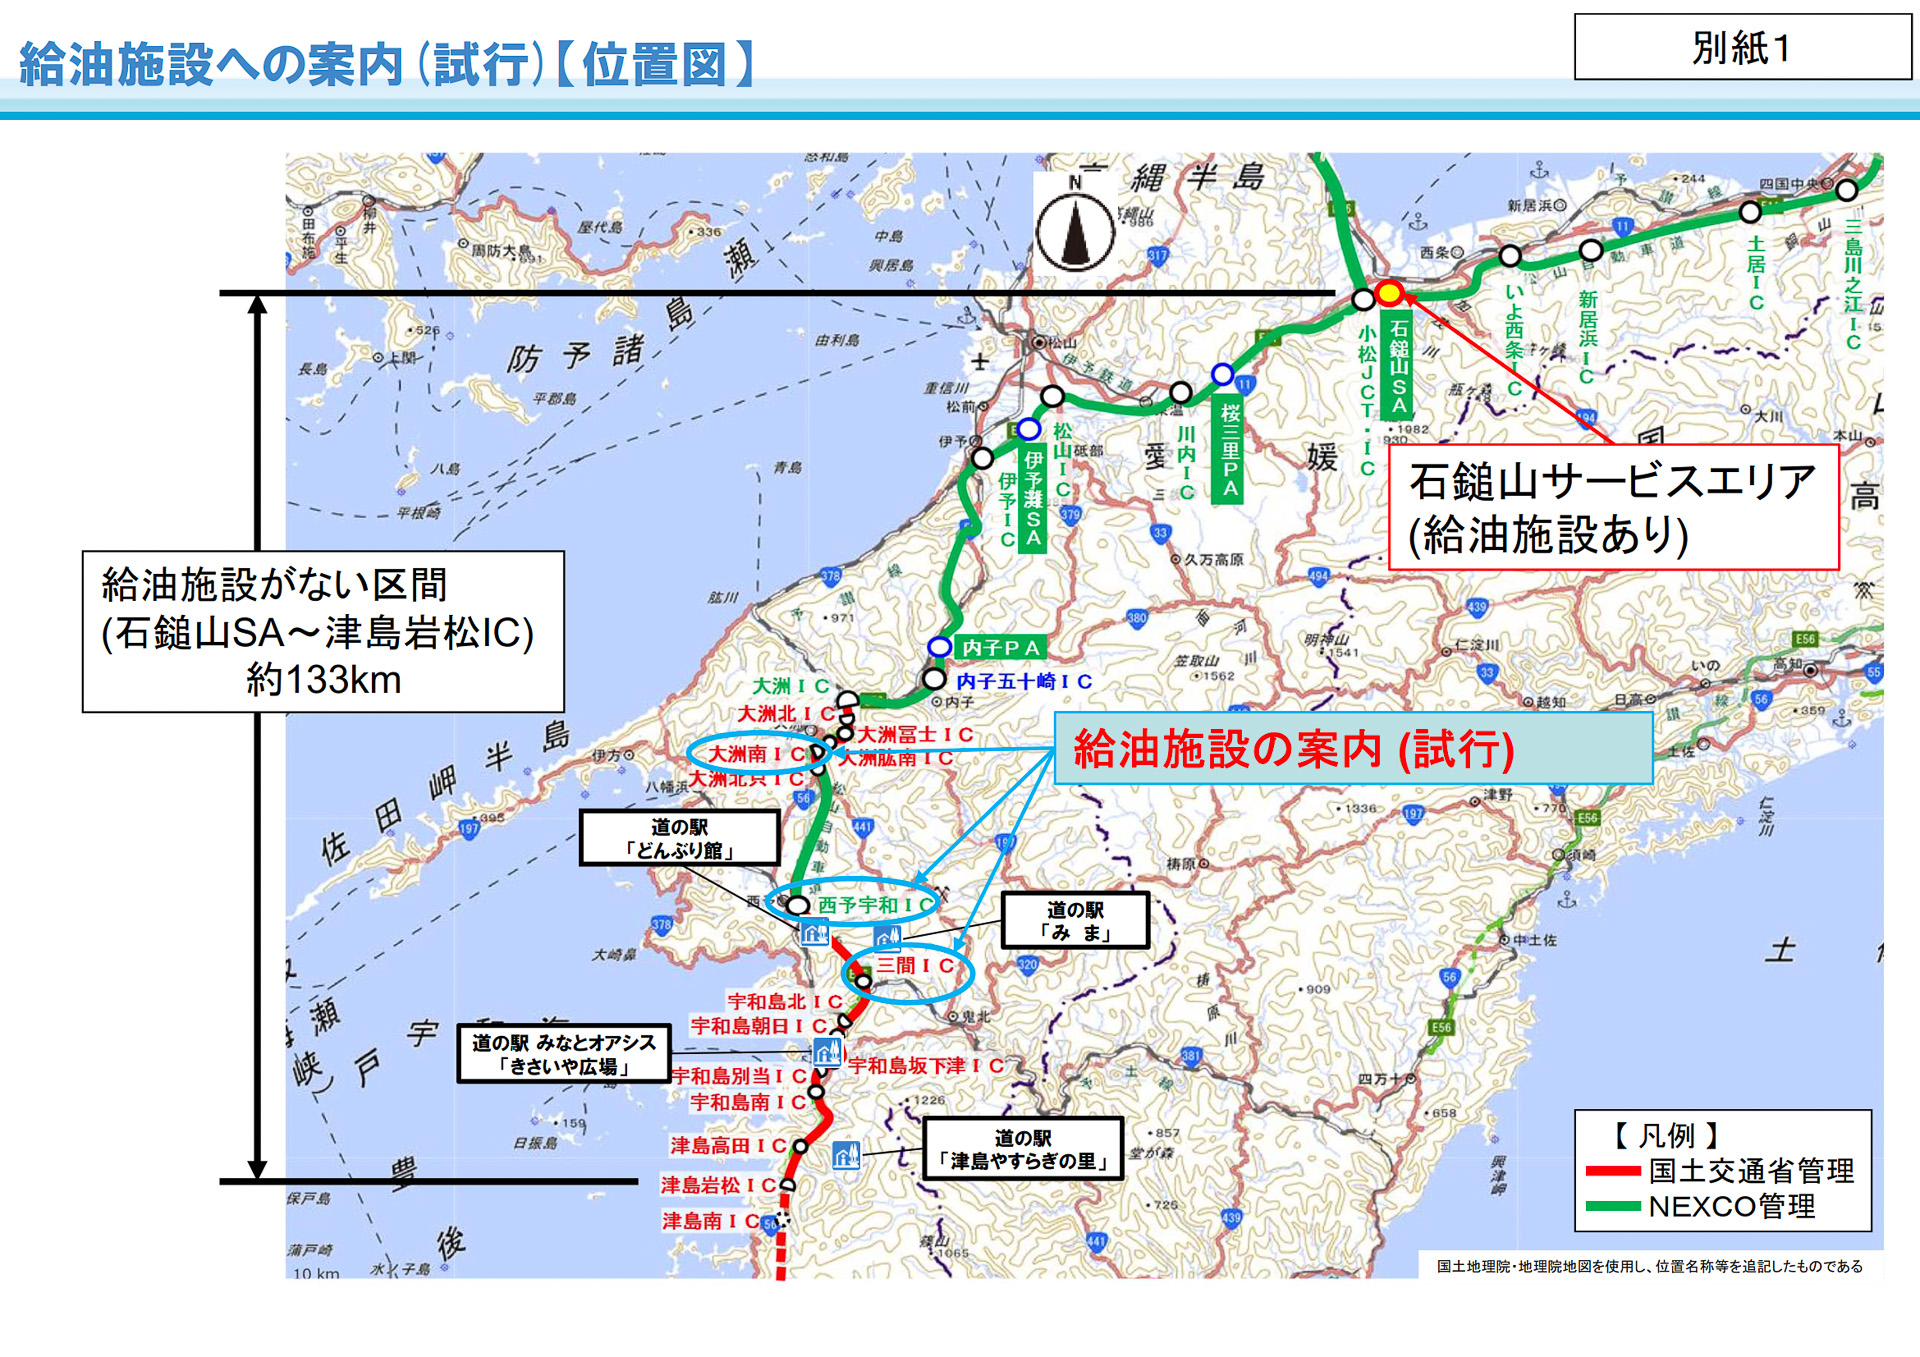 国交省 愛媛県内の高速道路で沿道の給油施設を案内する誘導標識を設置 給油施設のない石鎚山sa 津島岩松ic間の約133kmで試行 トラベル Watch